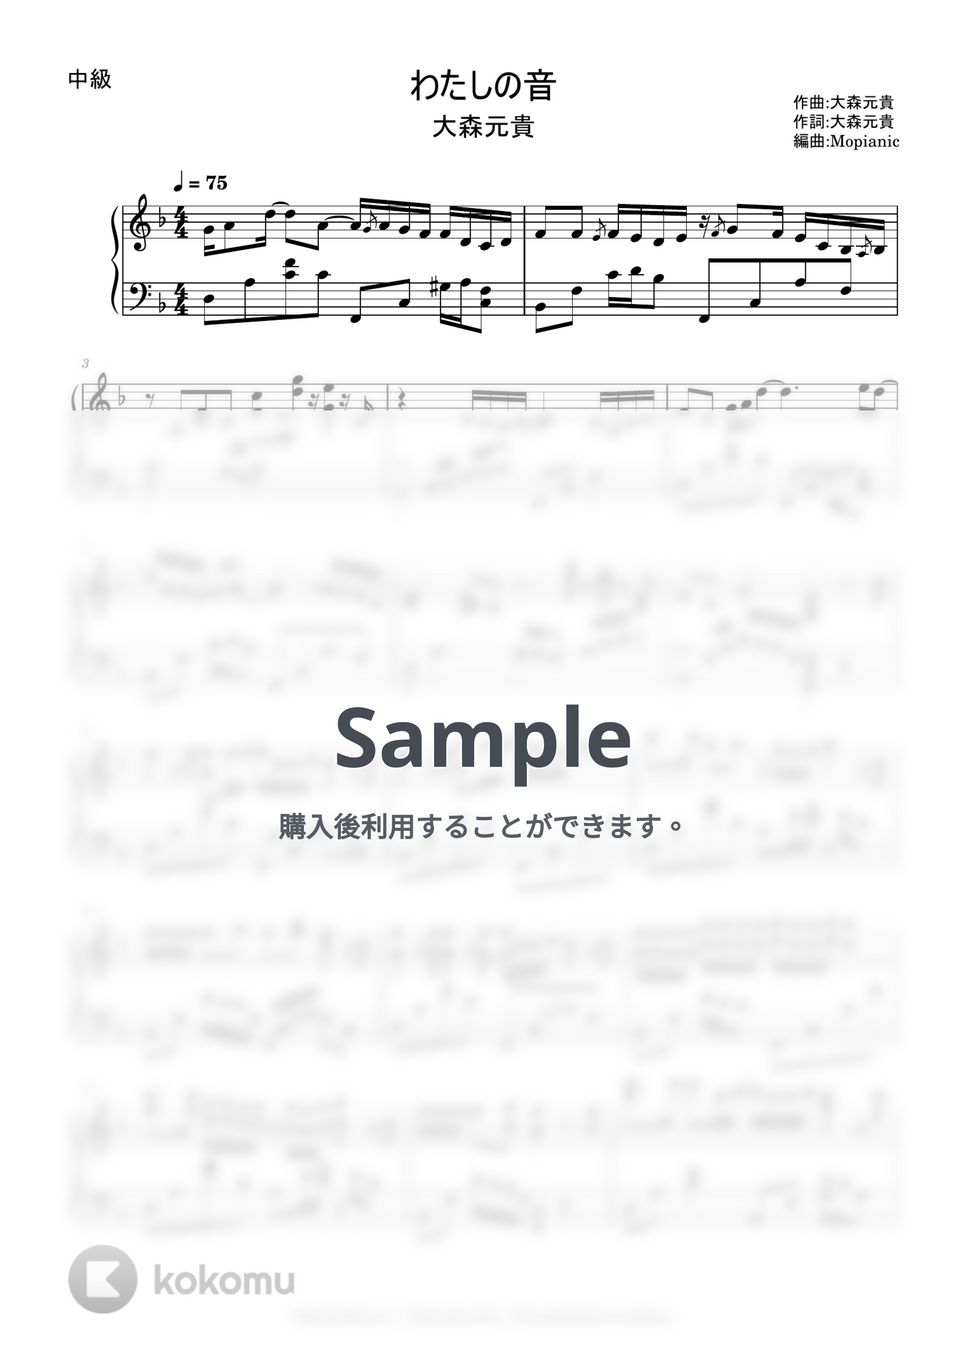 大森元貴 - わたしの音 (intermediate, piano) by Mopianic